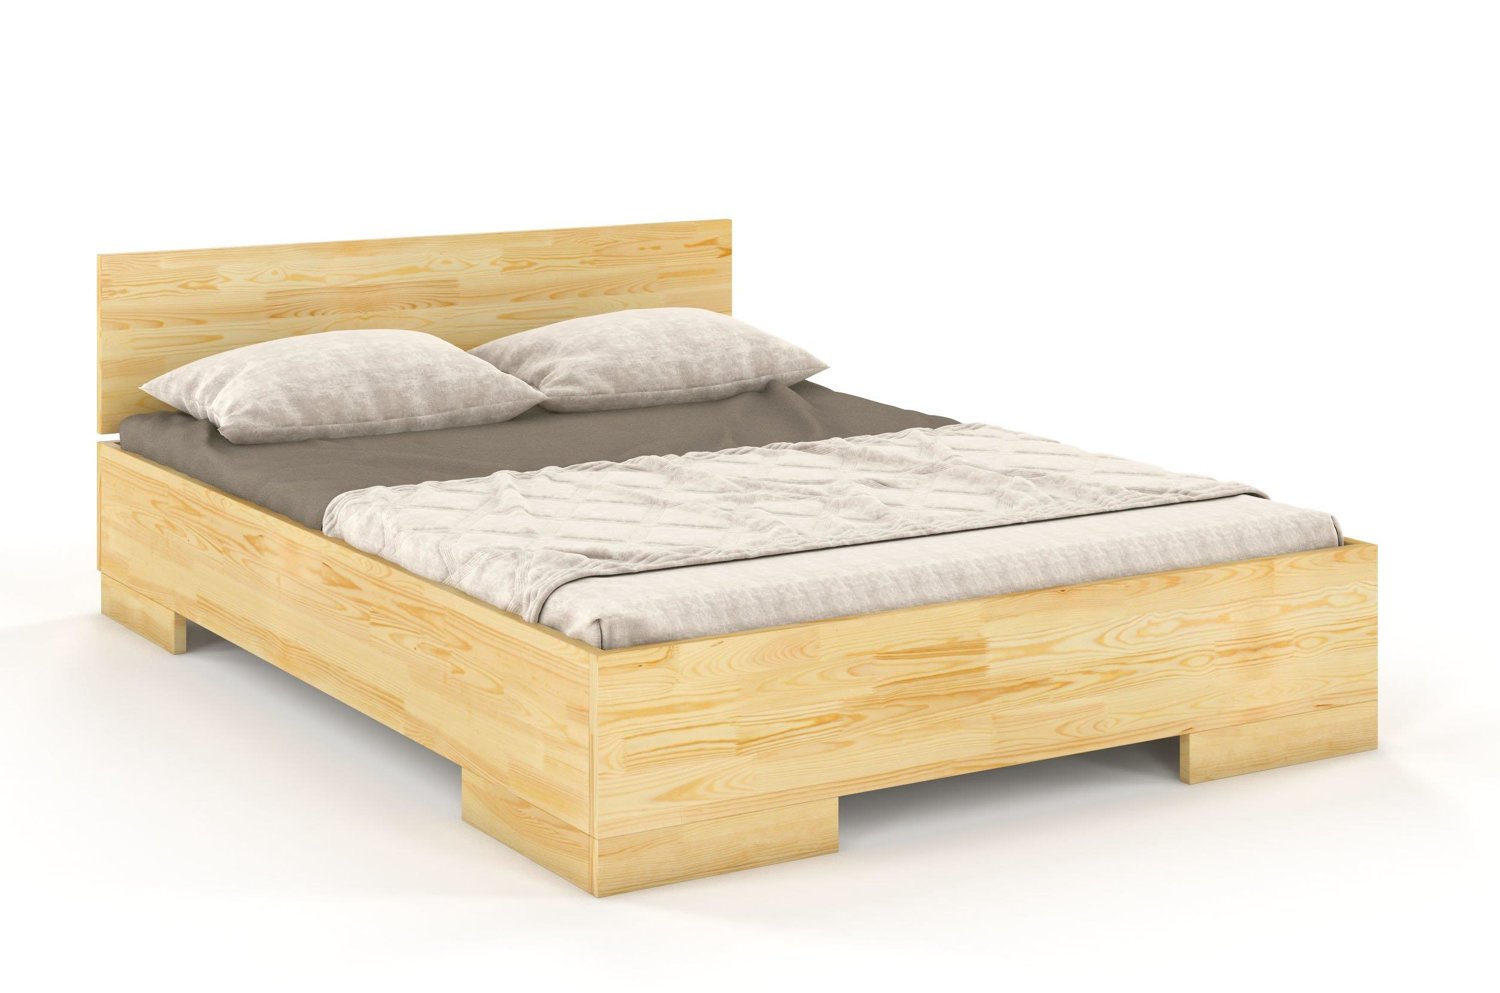 Łóżko drewniane sosnowe Skandica SPECTRUM Maxi & Long (długość + 20 cm) / 180x220 cm, kolor naturalny